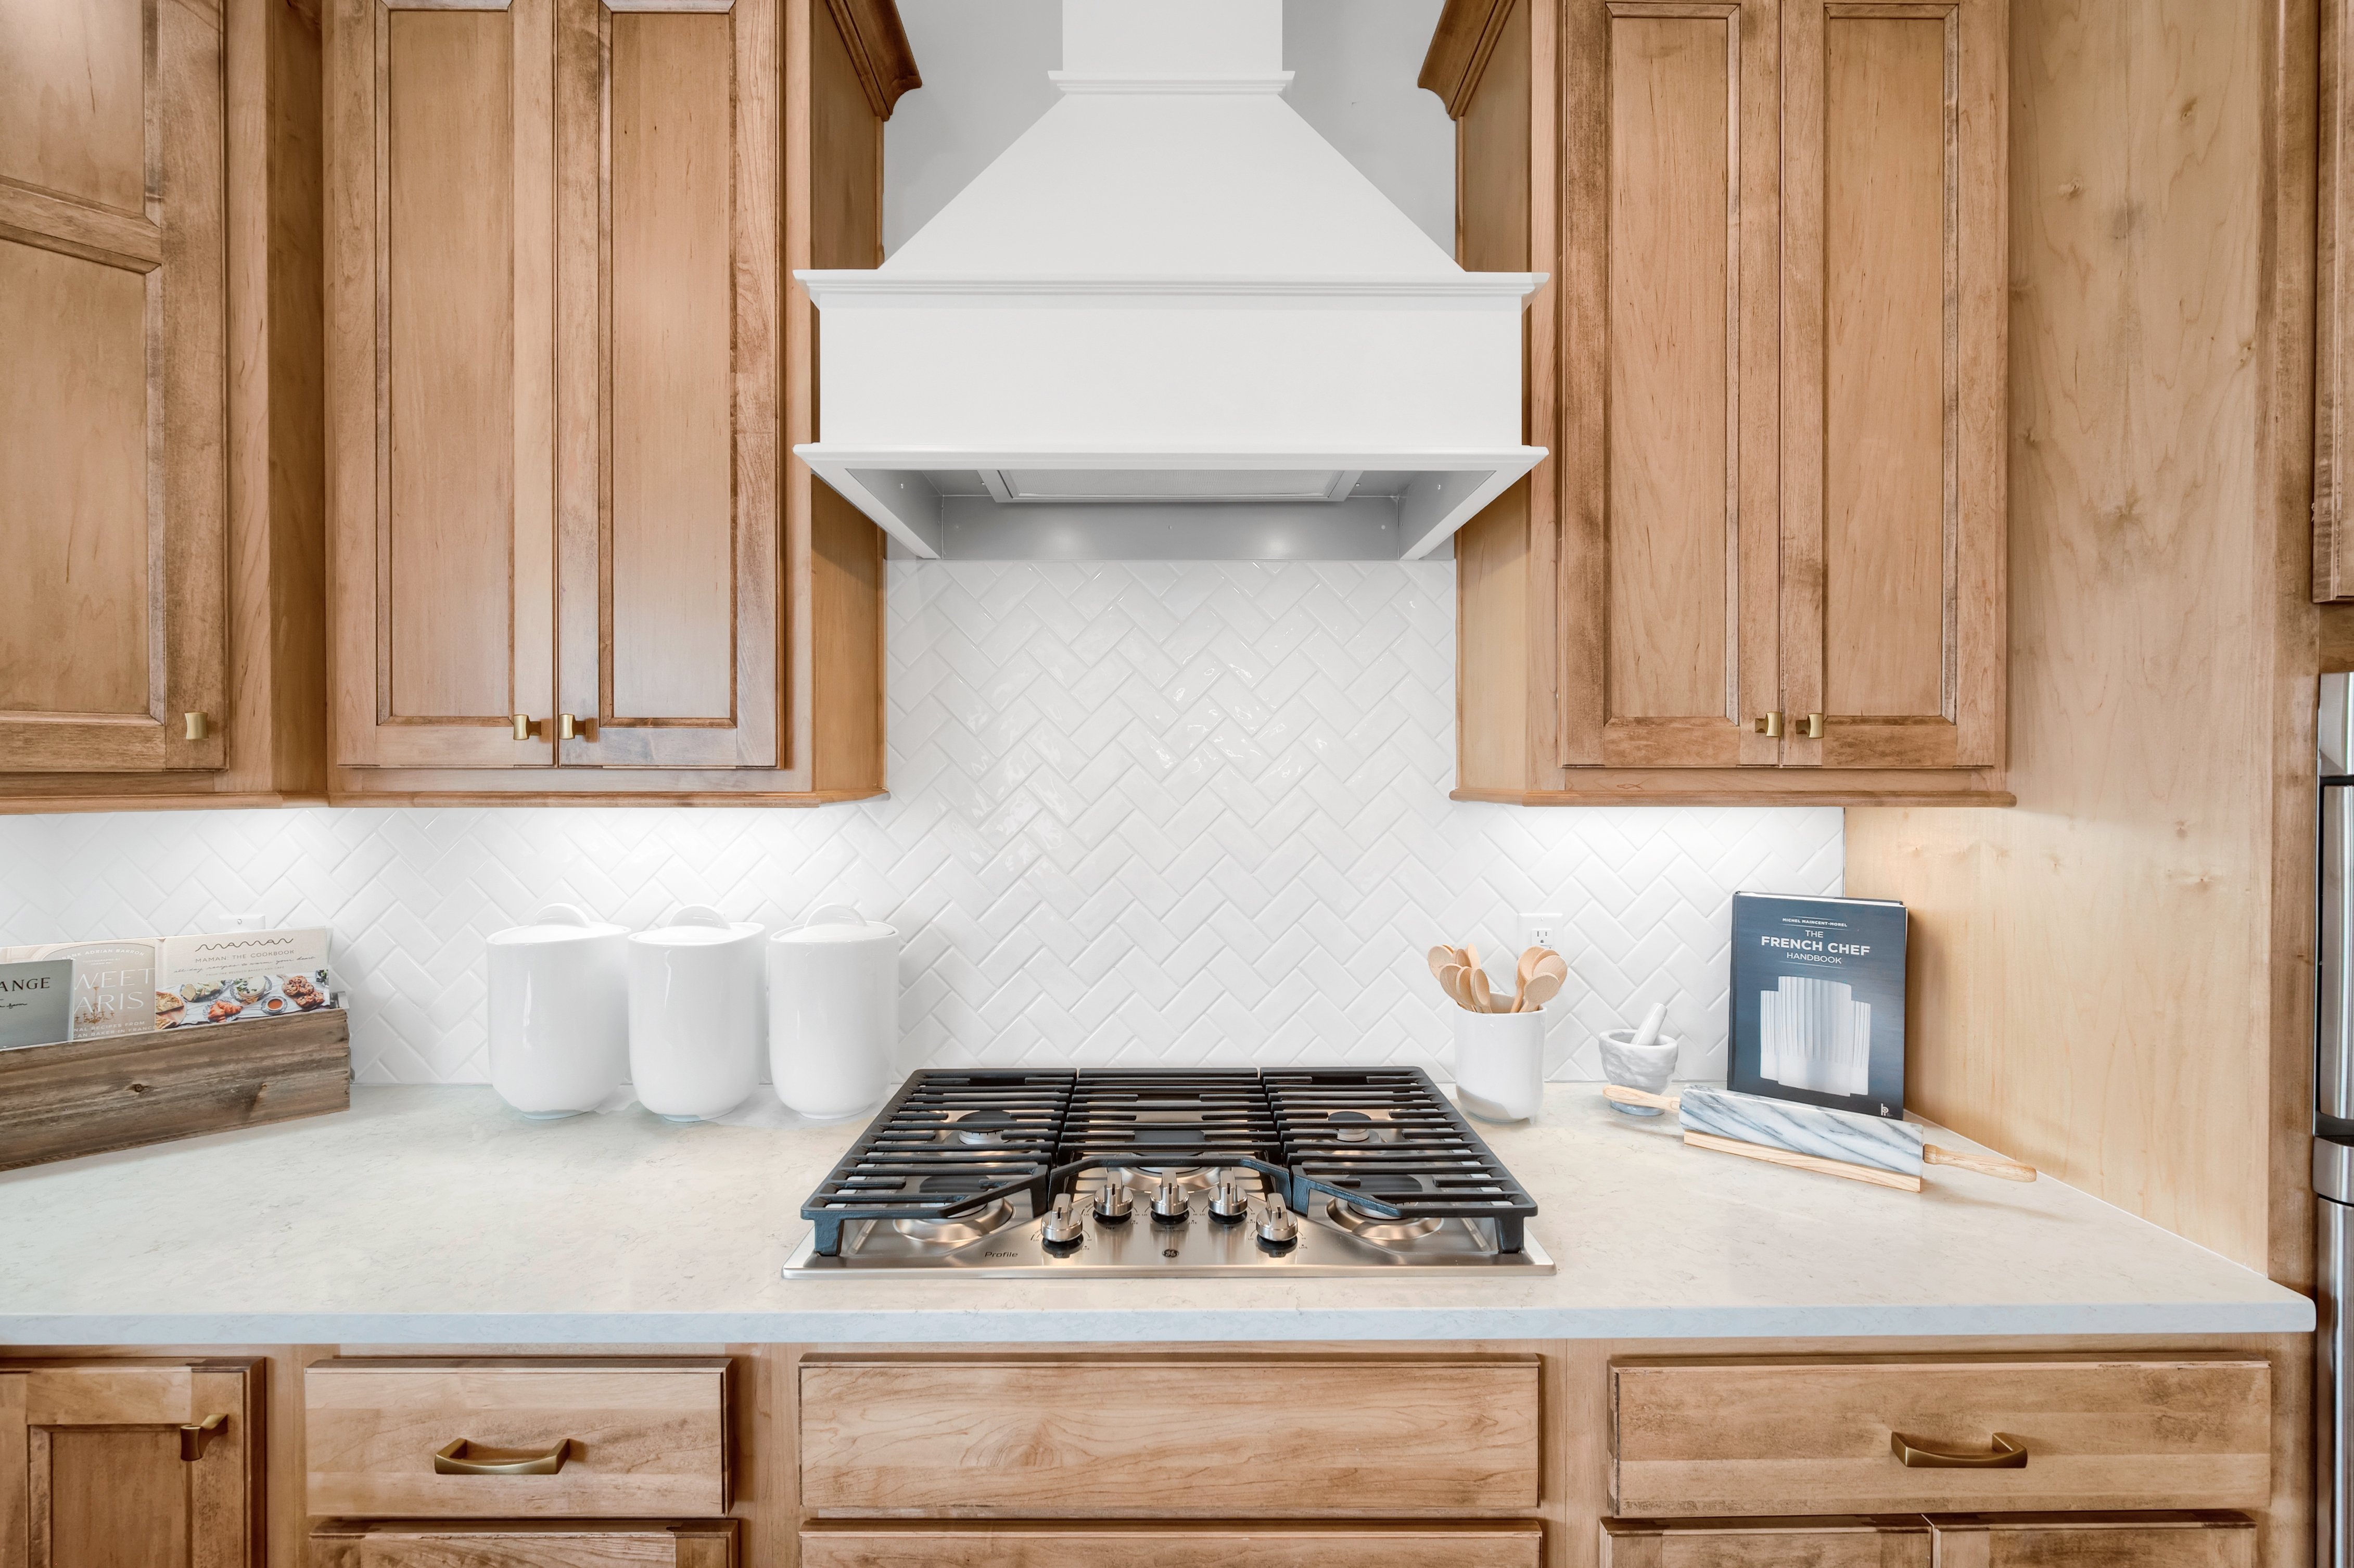 Kitchen Cooktop and Backsplash in M/I Homes Model Home